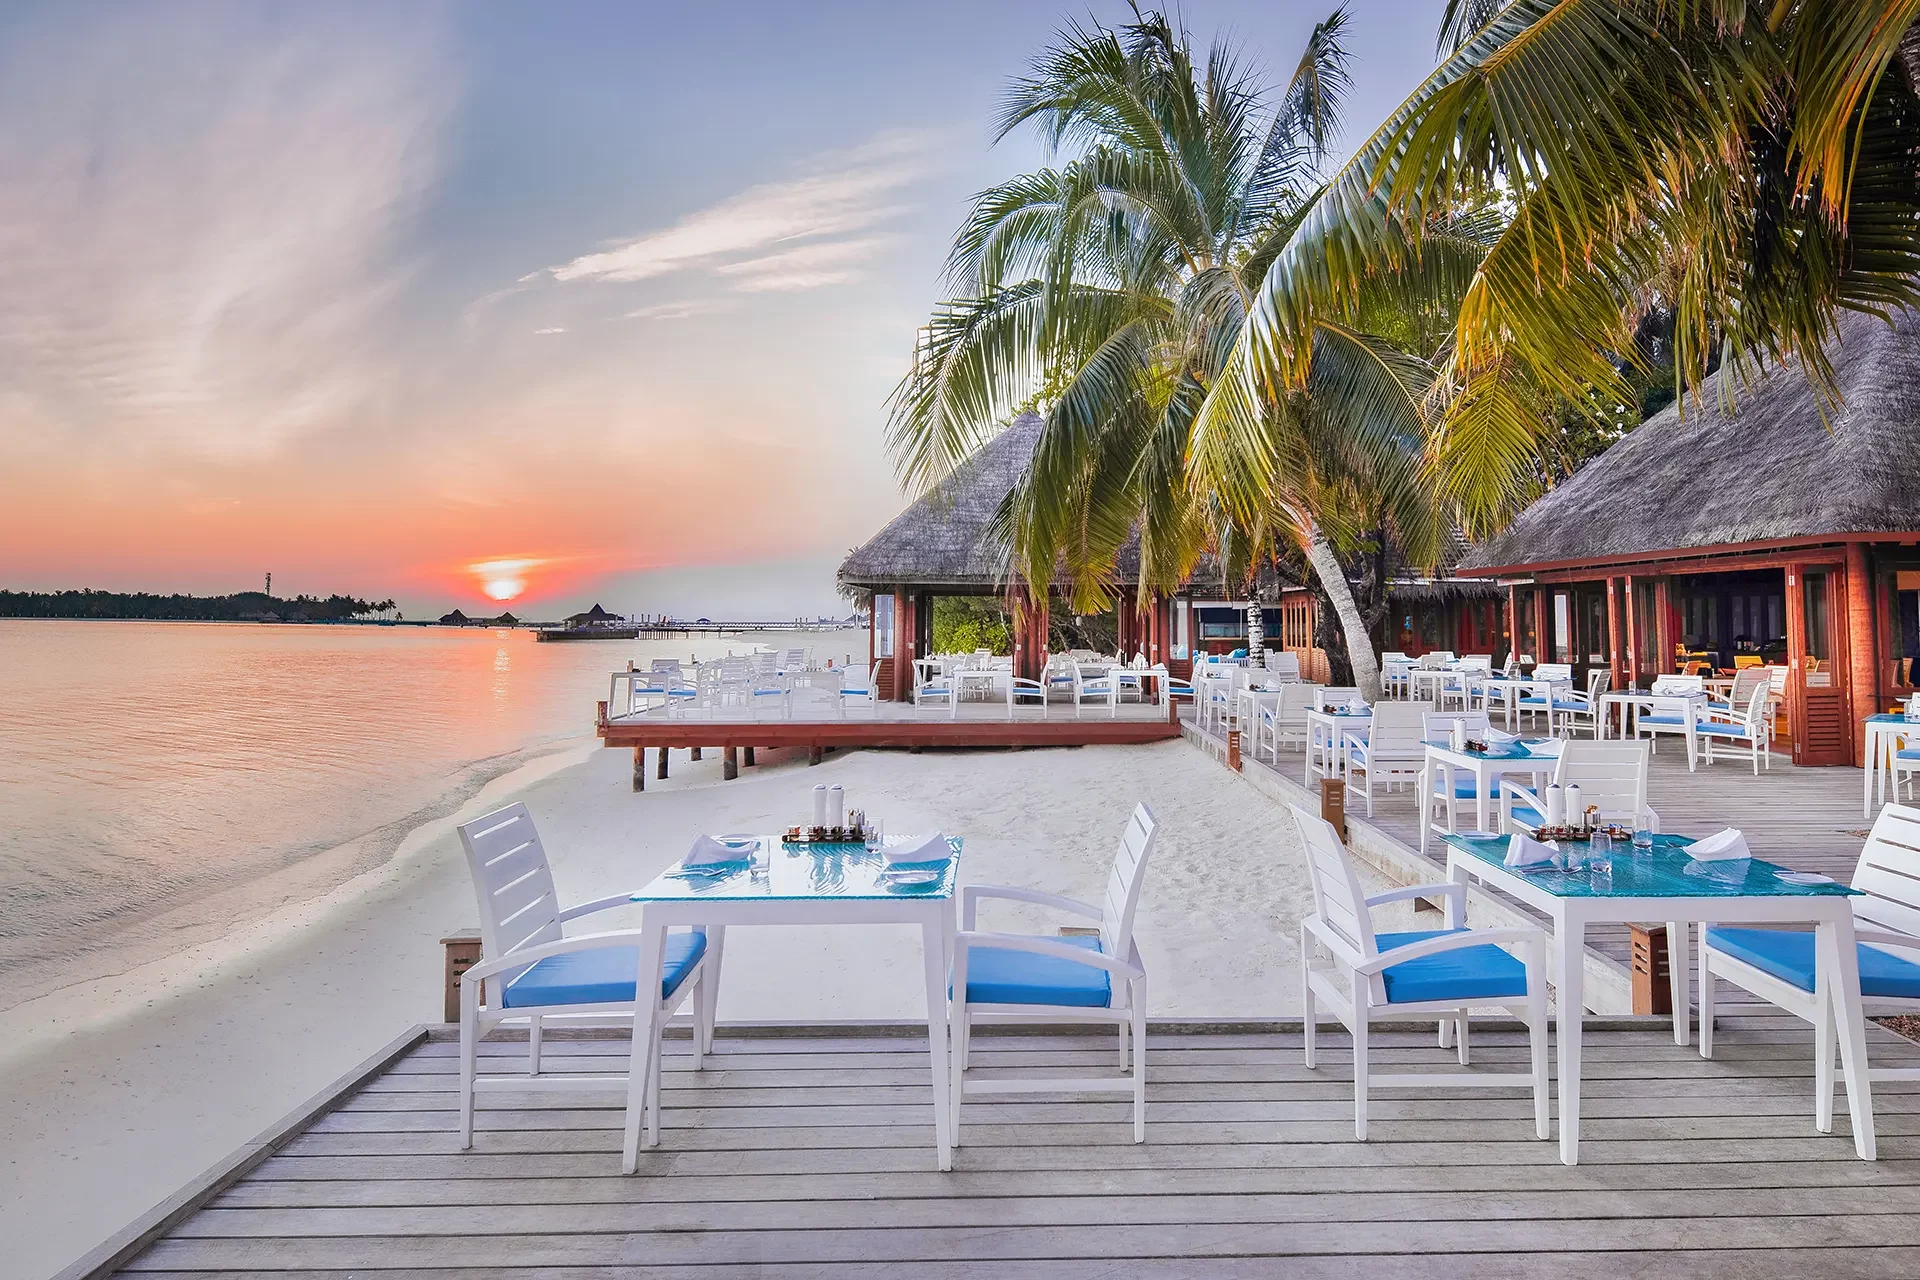 Terrasse eines Strandrestaurants mit Palmen